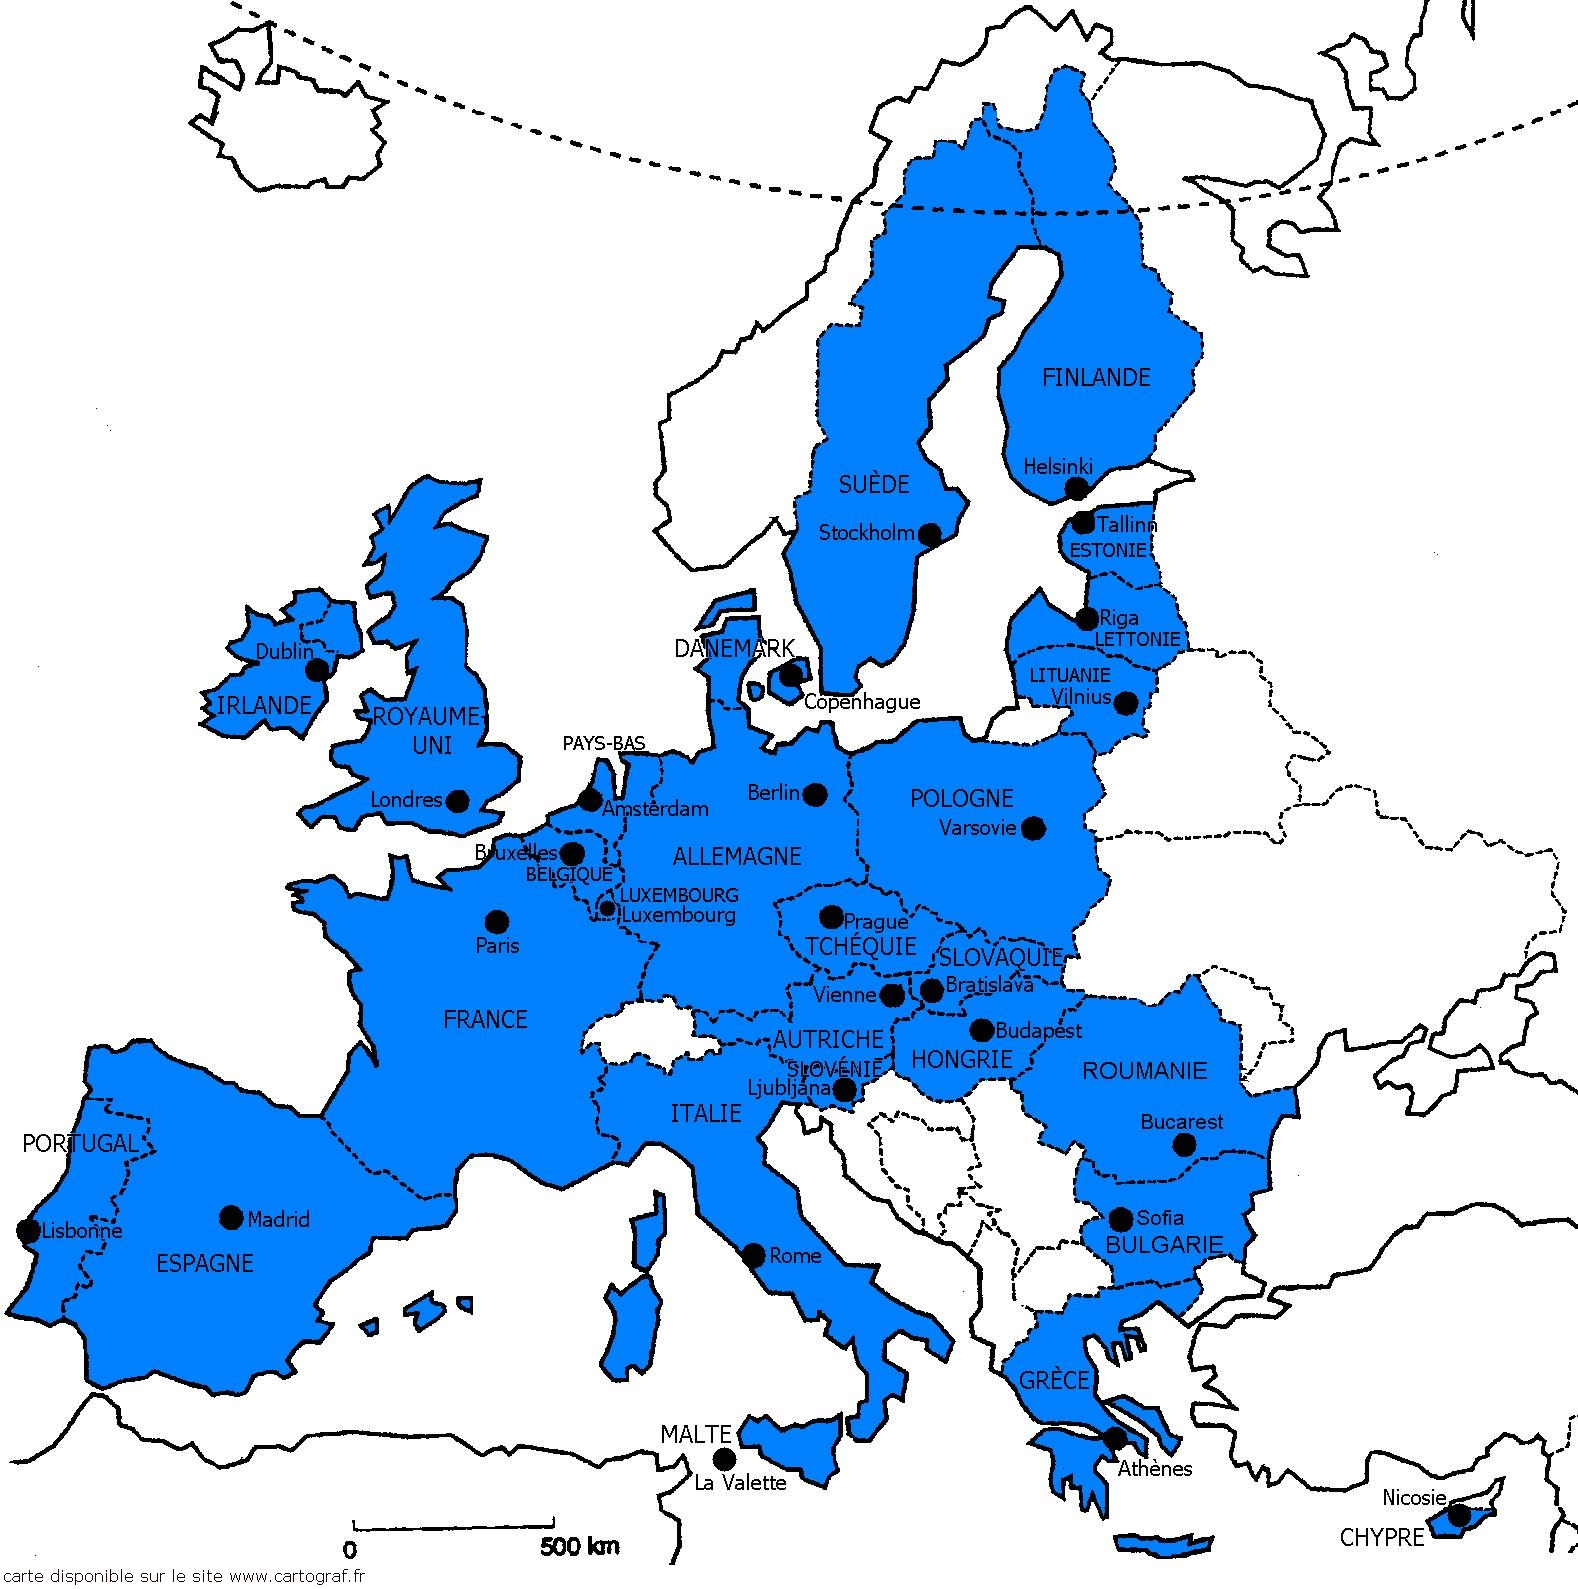 Cartograf.fr : Les Cartes Des Continents : L'europe : Page 5 dedans Apprendre Pays Europe